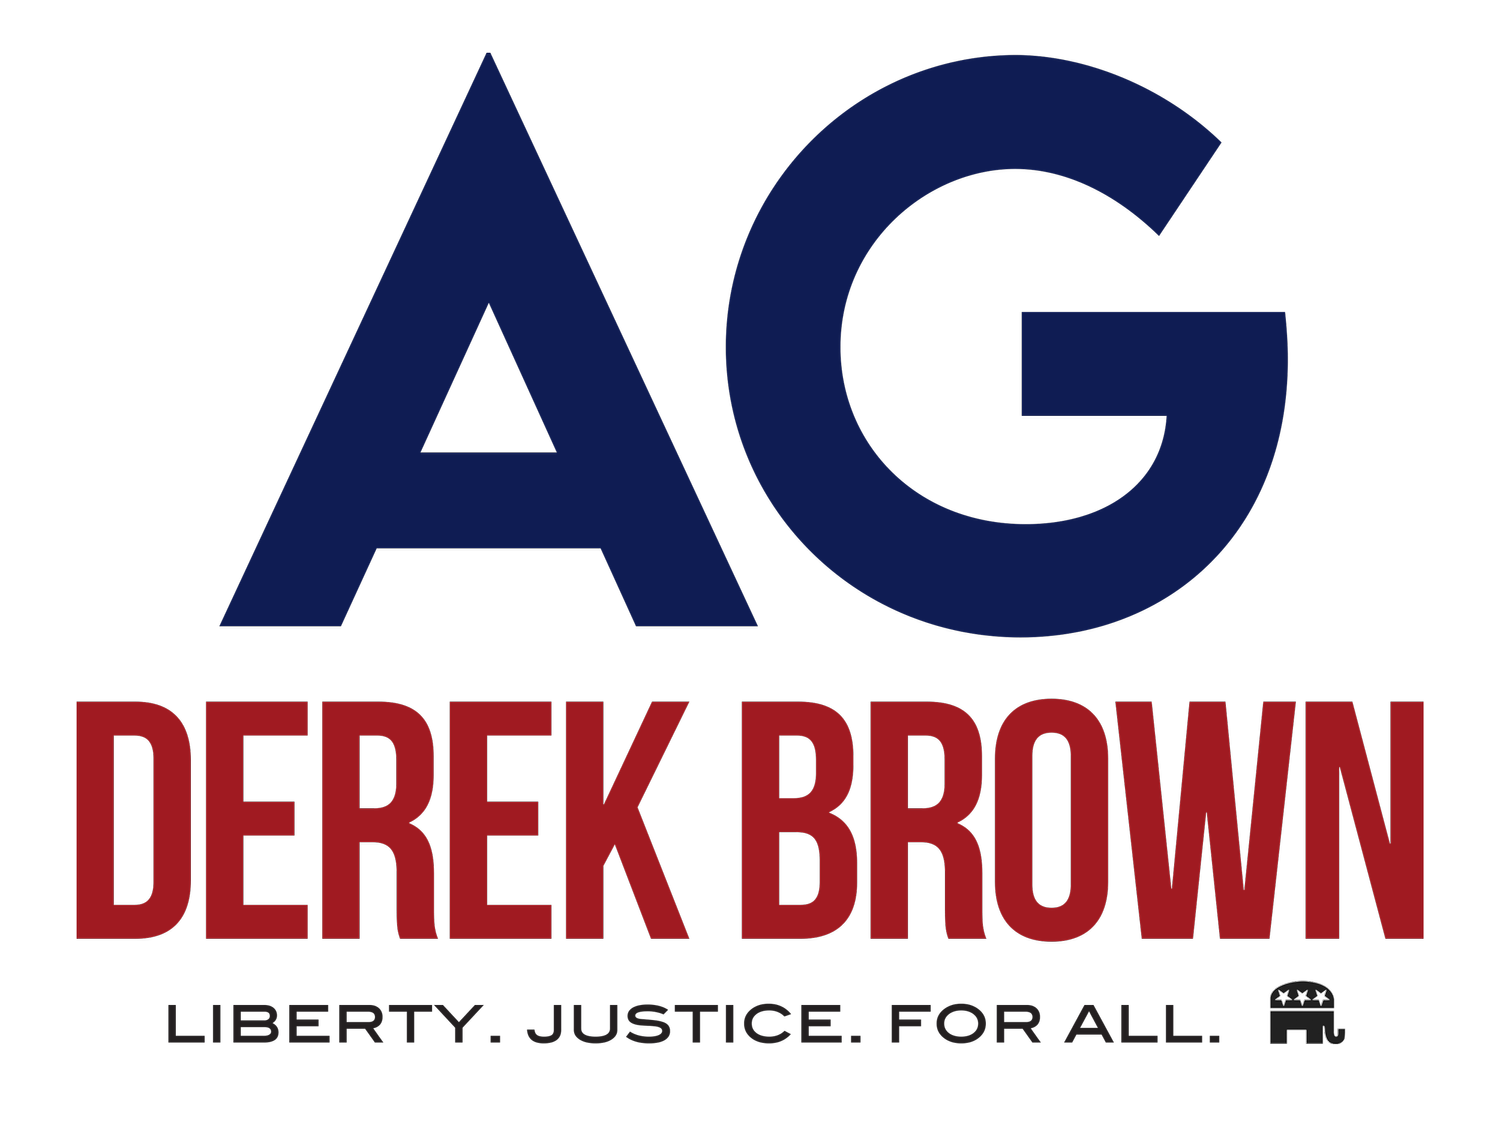 Derek Brown for Attorney General